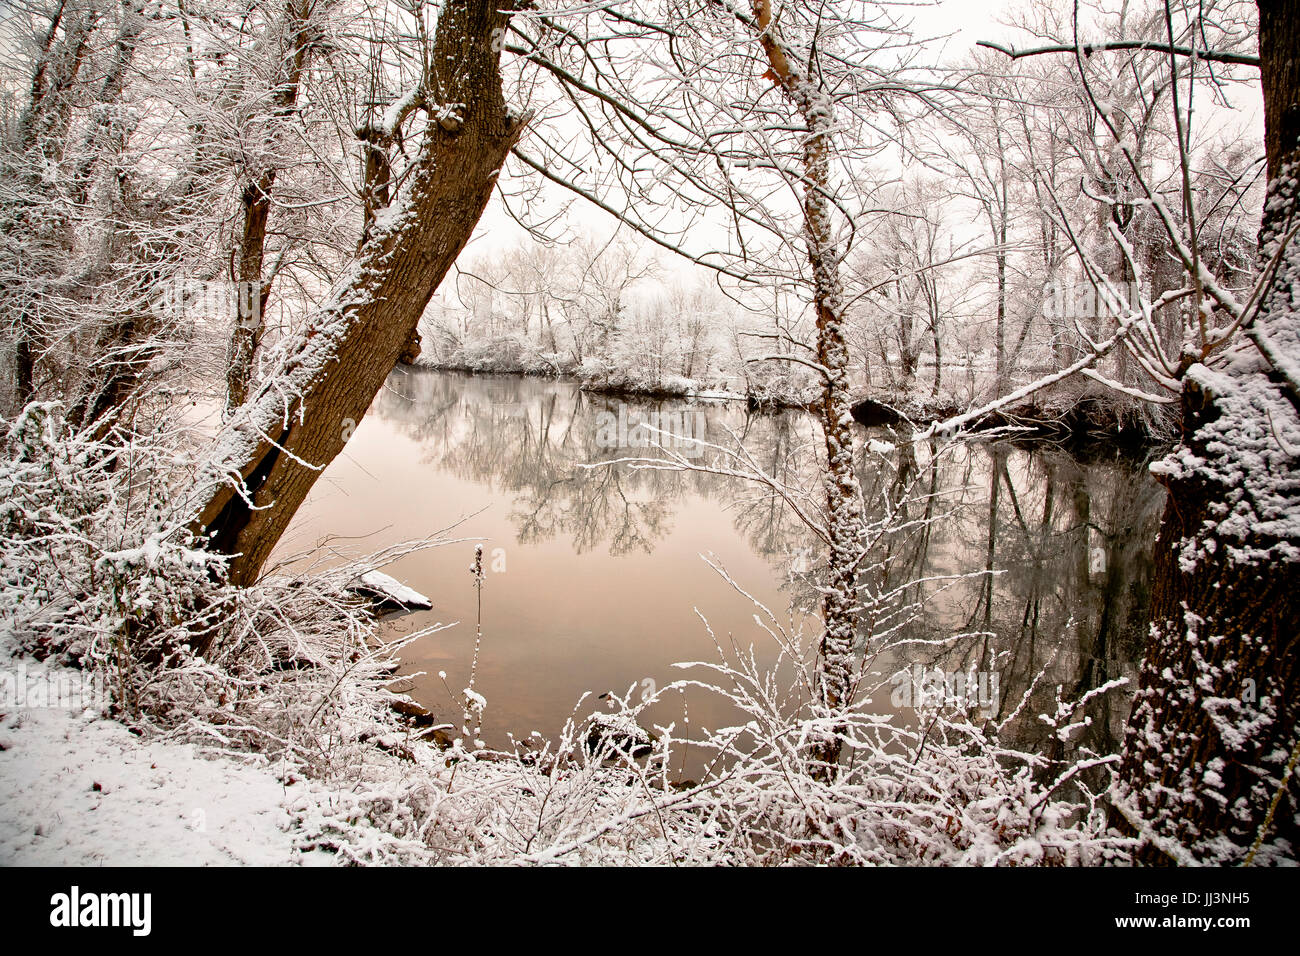 Flussufer verschneite malerische Aussicht, reflektieren Bäume im Wasser, ruhige, verträumte Winterlandschaft. Stockfoto